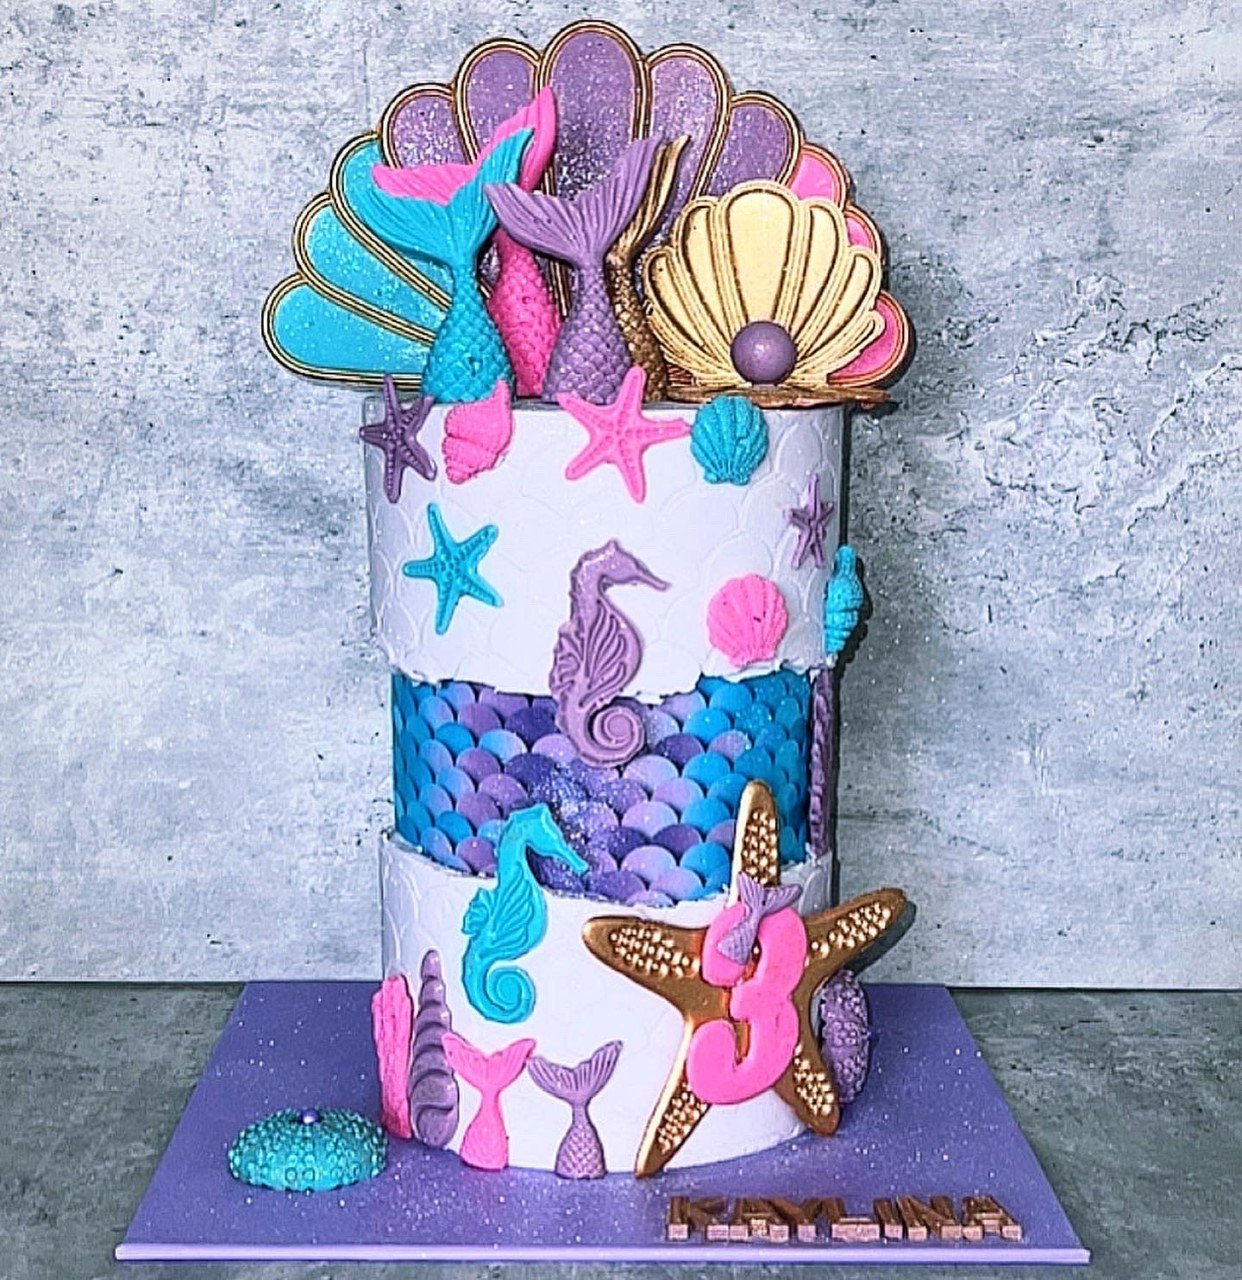 SimasBaking_custom_birthday_cake11.jpeg